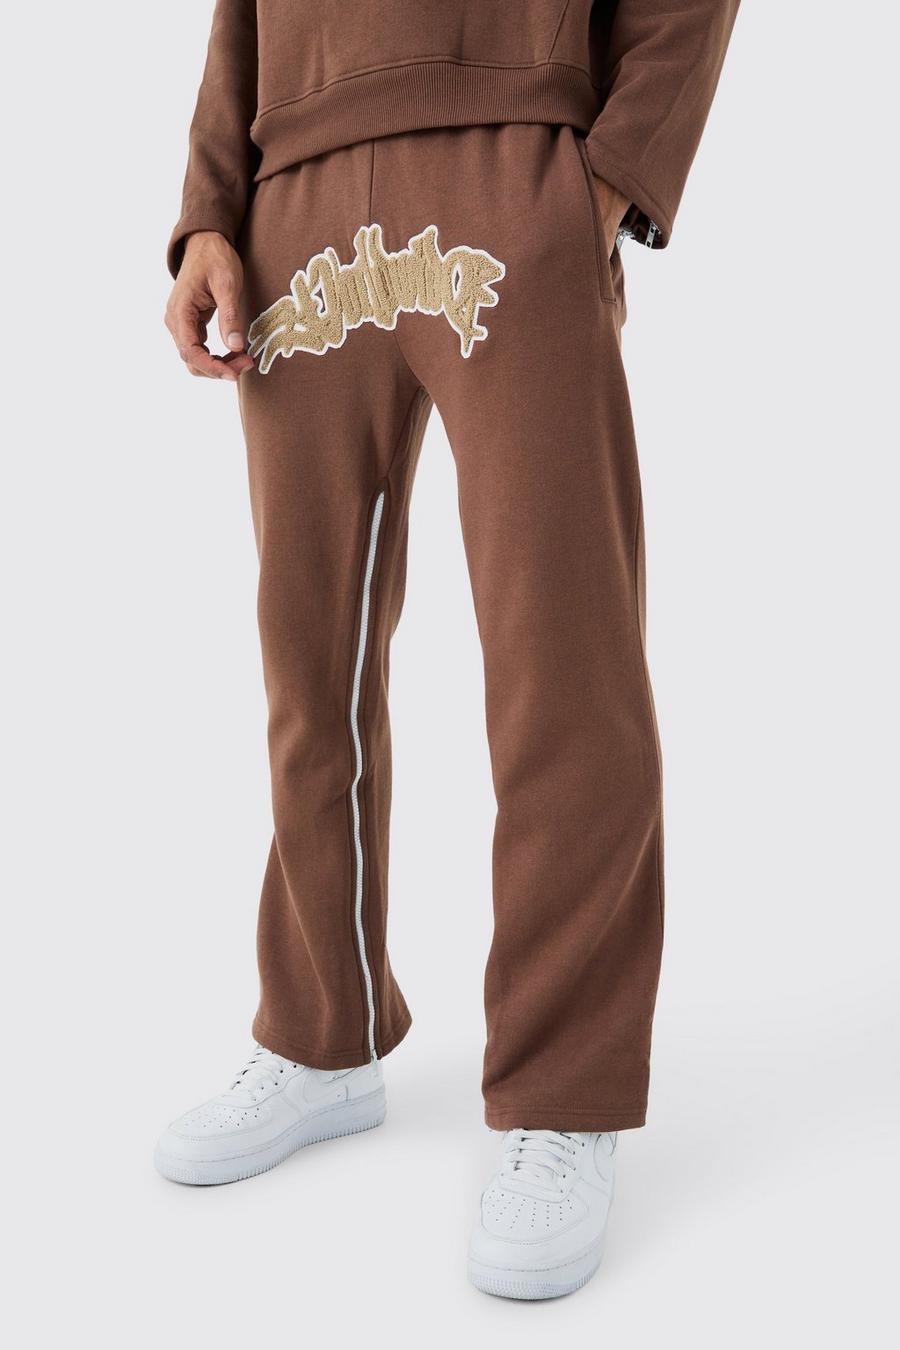 Pantaloni tuta Worldwide con inserti, applique e zip, Chocolate image number 1